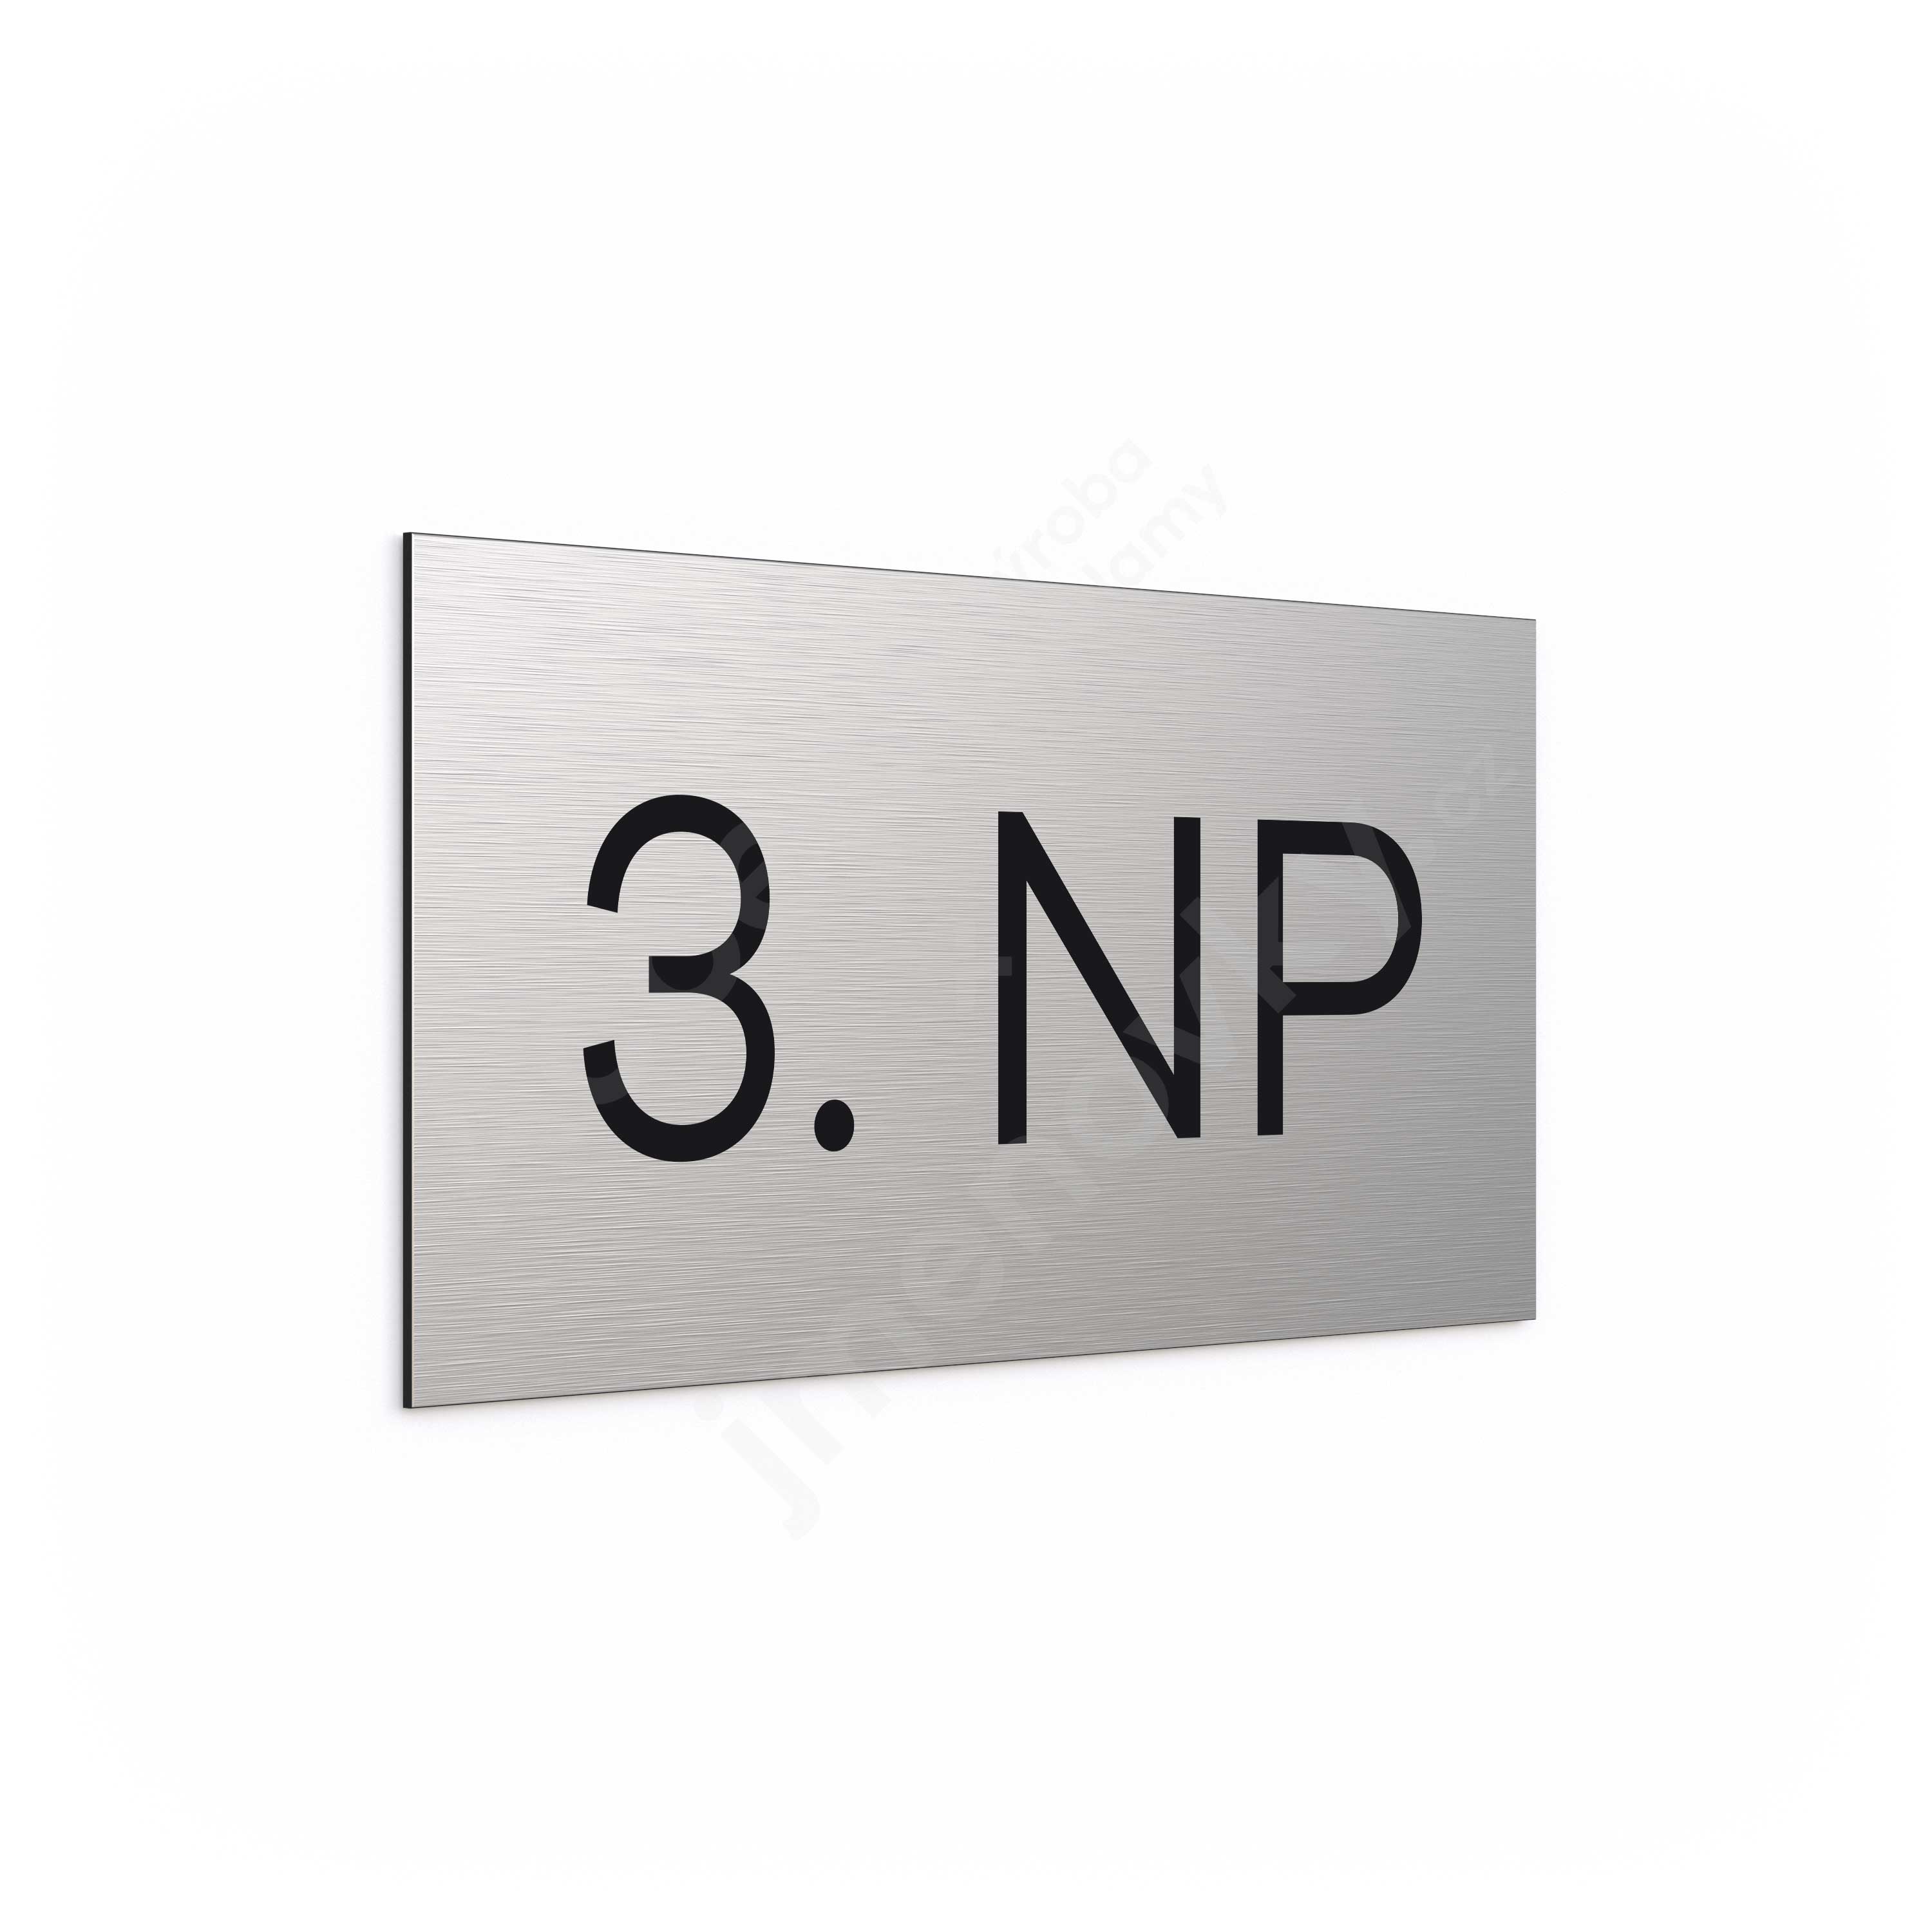 Označení podlaží "3. NP" (300 x 150 mm)